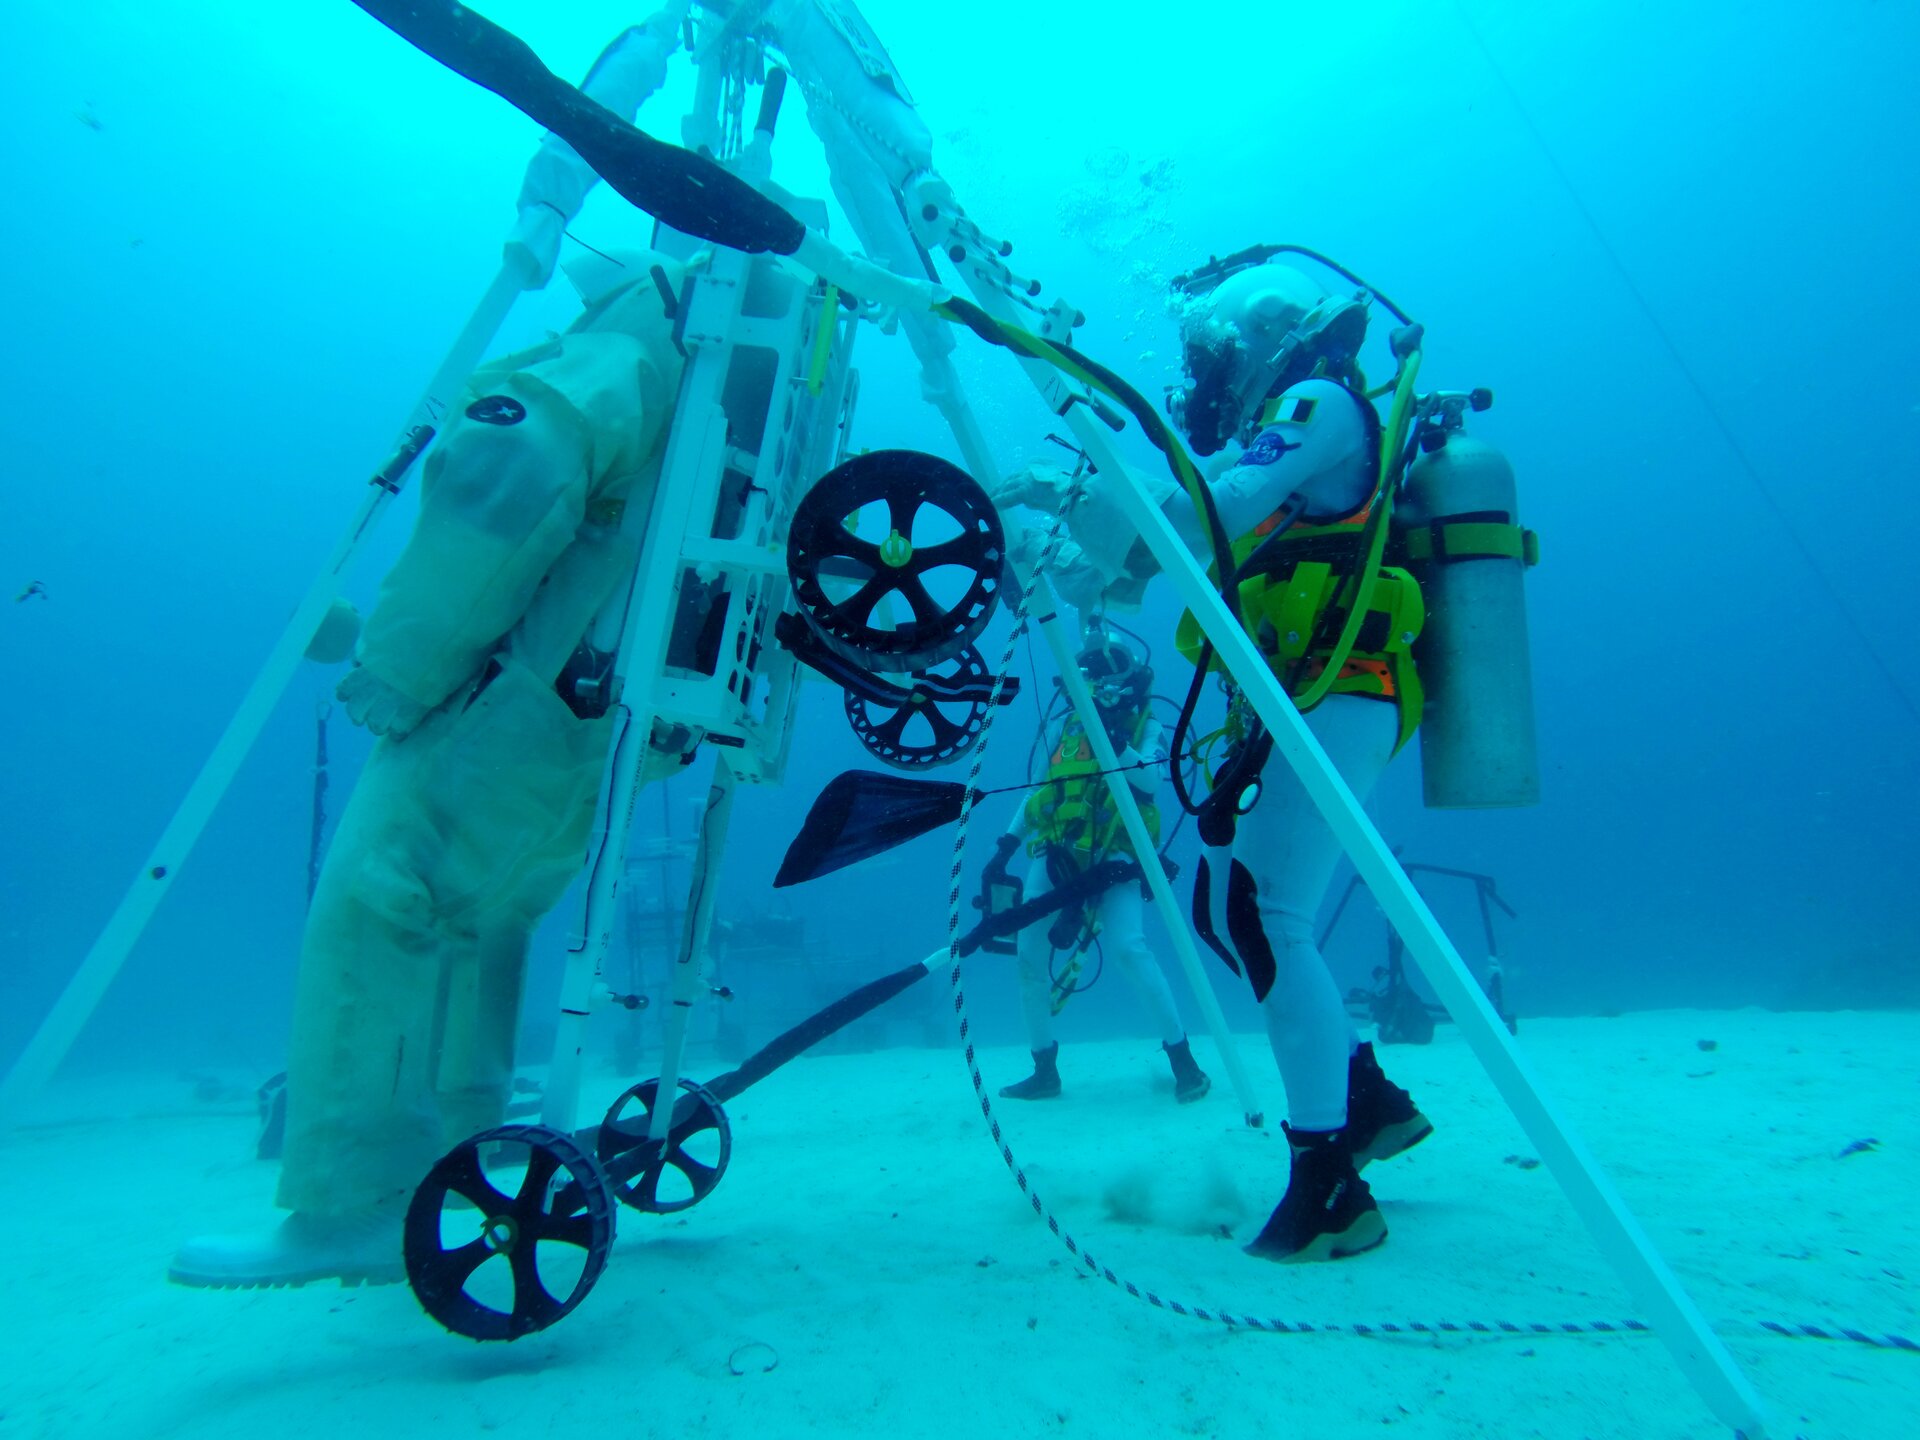 NEEMO 23 crew members test prototype of LESA rescue device